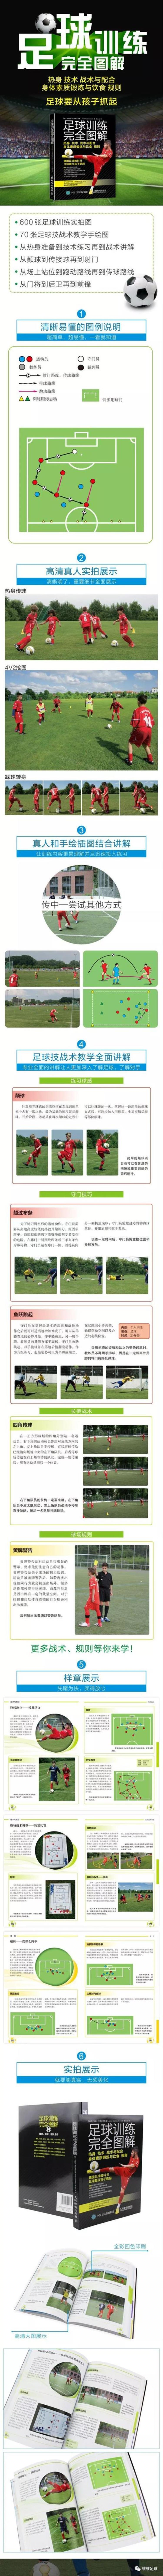 足球配合训练方法「维维图书推荐足球训练完全图解热身技术战术与配合」